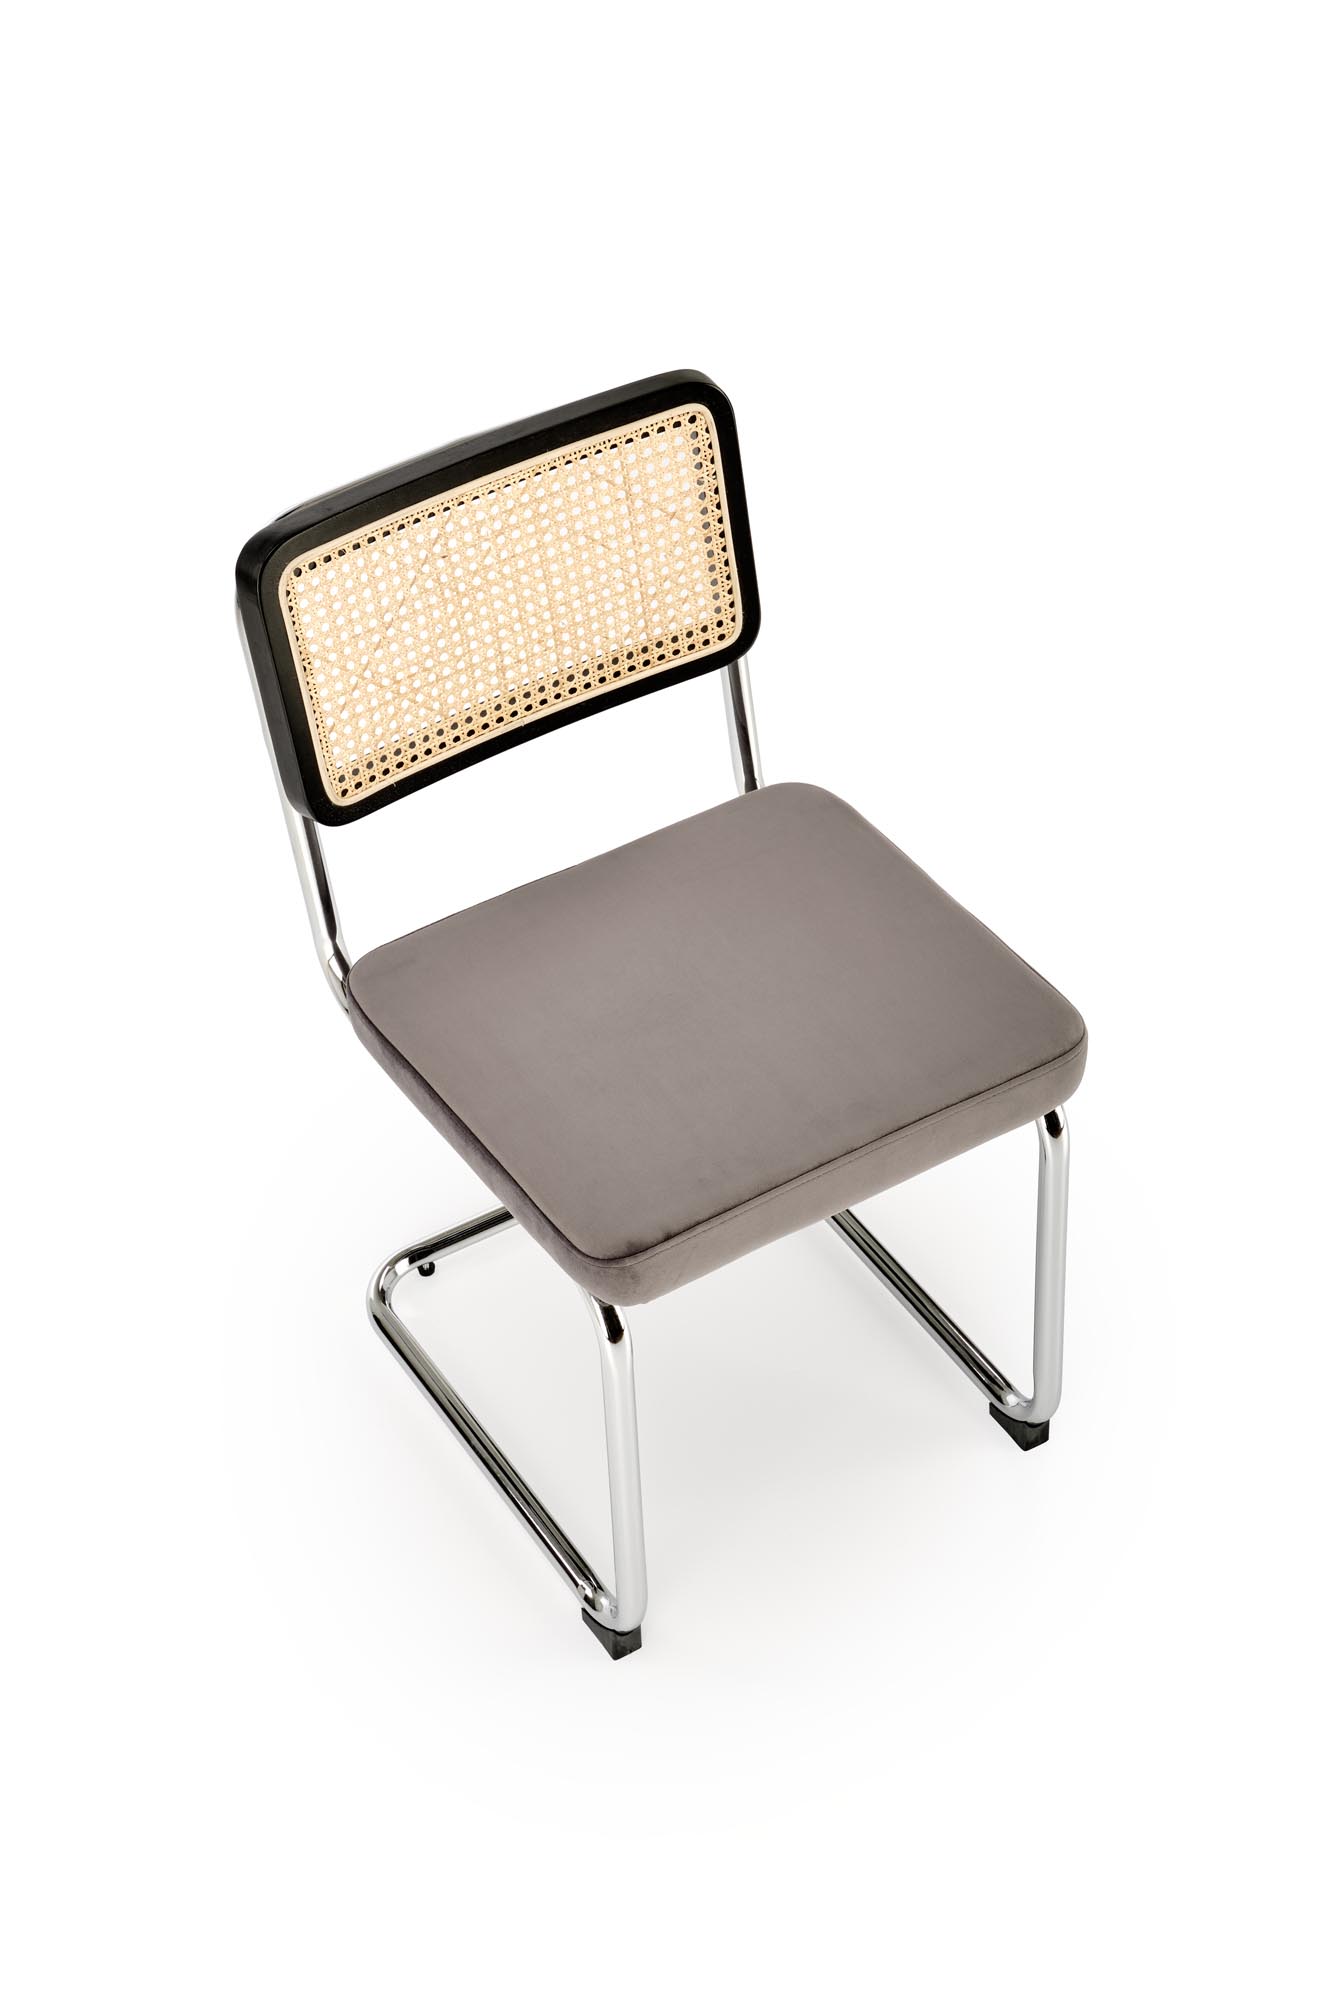 Krzesło metalowe z tapicerowanym siedziskiem K504 - popielaty / czarny krzesło metalowe z tapicerowanym siedziskiem k504 - popielaty / czarny